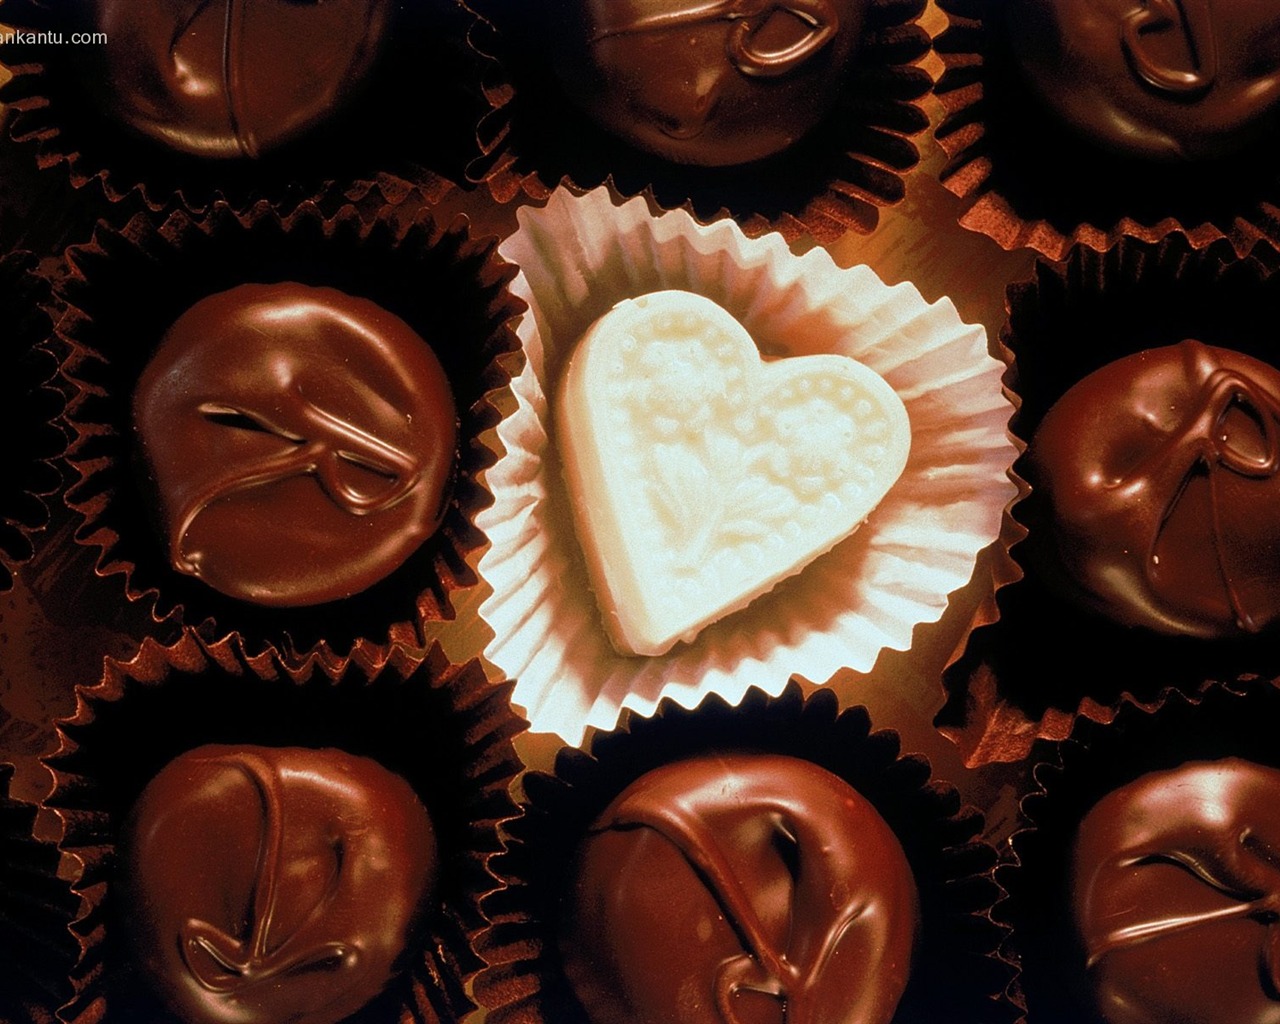 Le indélébile Saint Valentin au chocolat #3 - 1280x1024